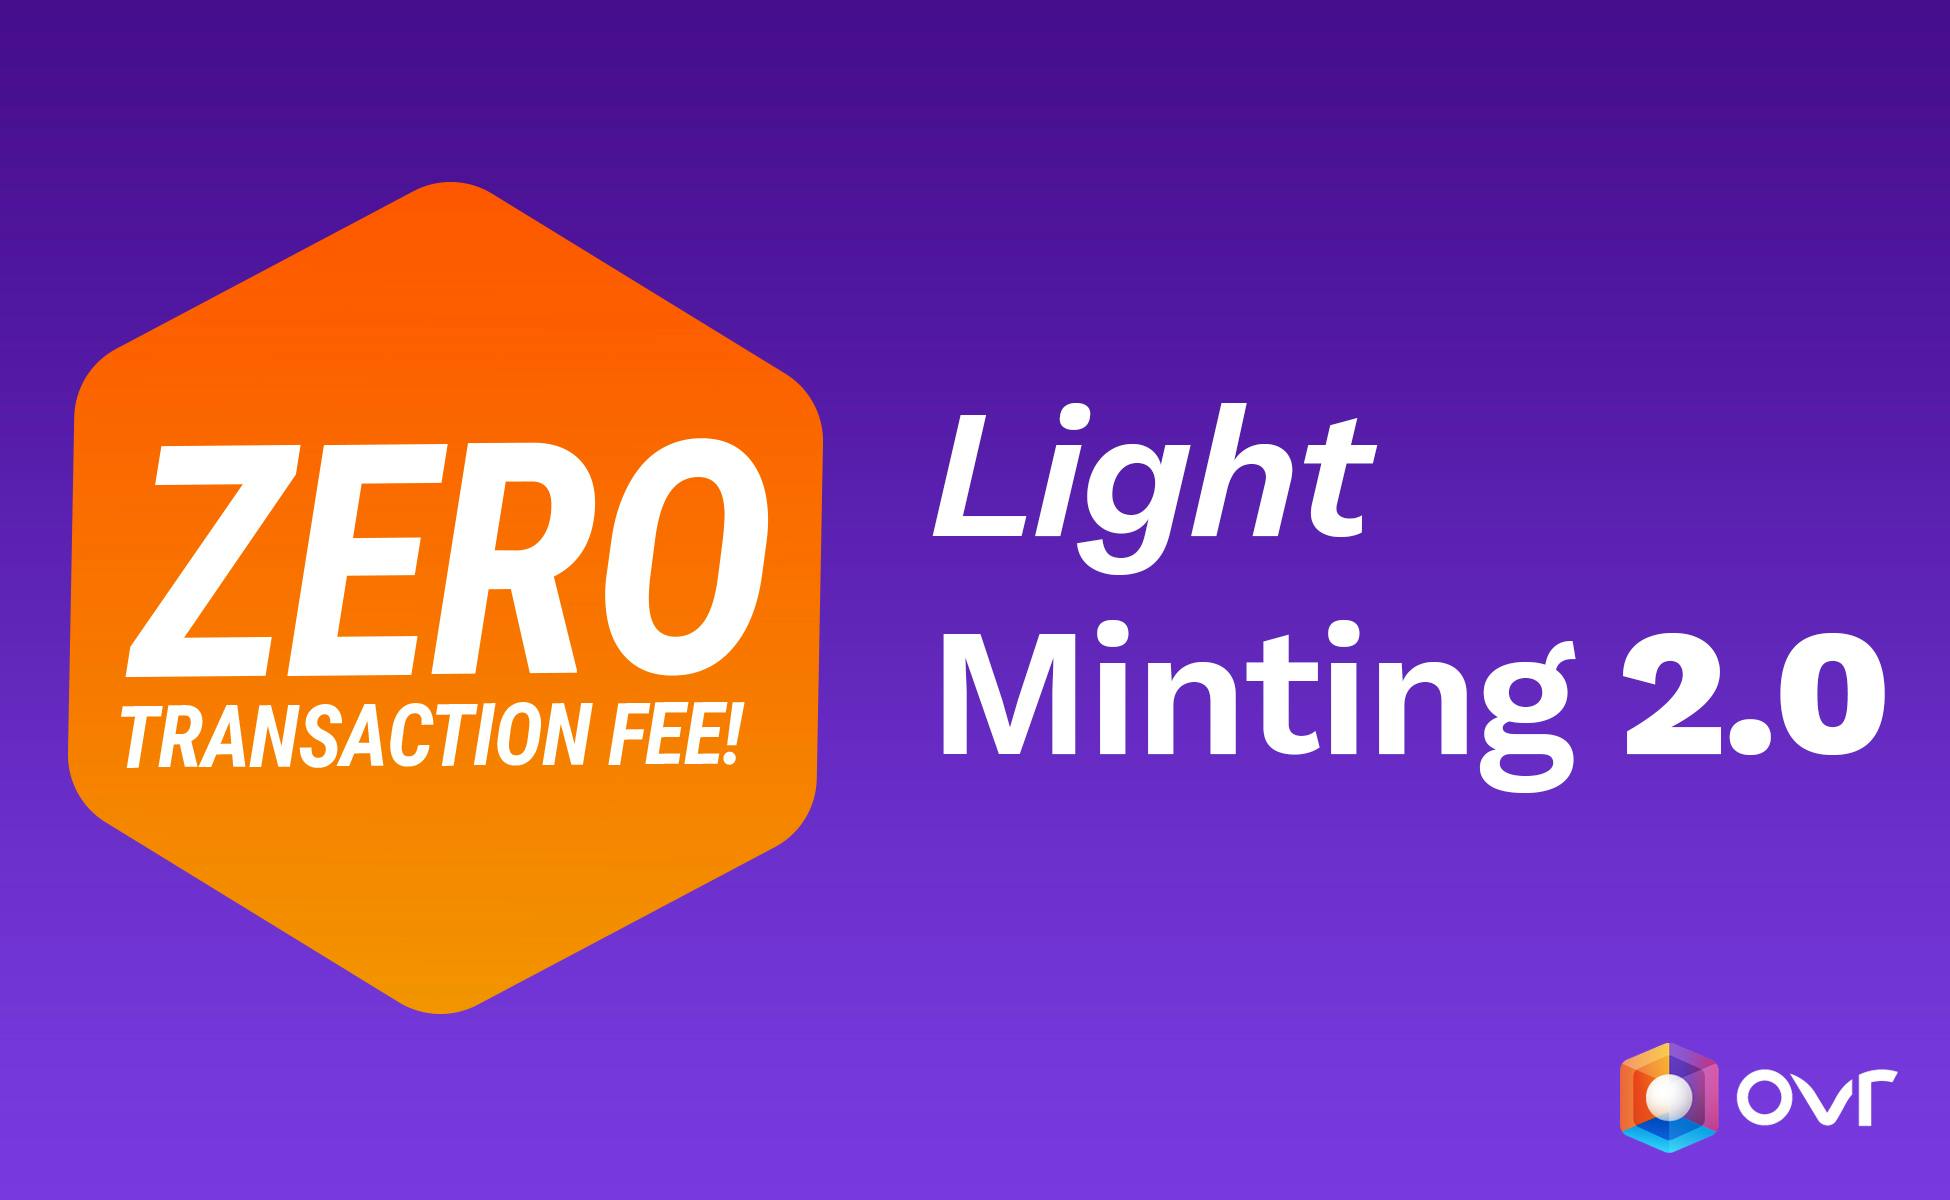 Le Light Minting 2.0 est en ligne!